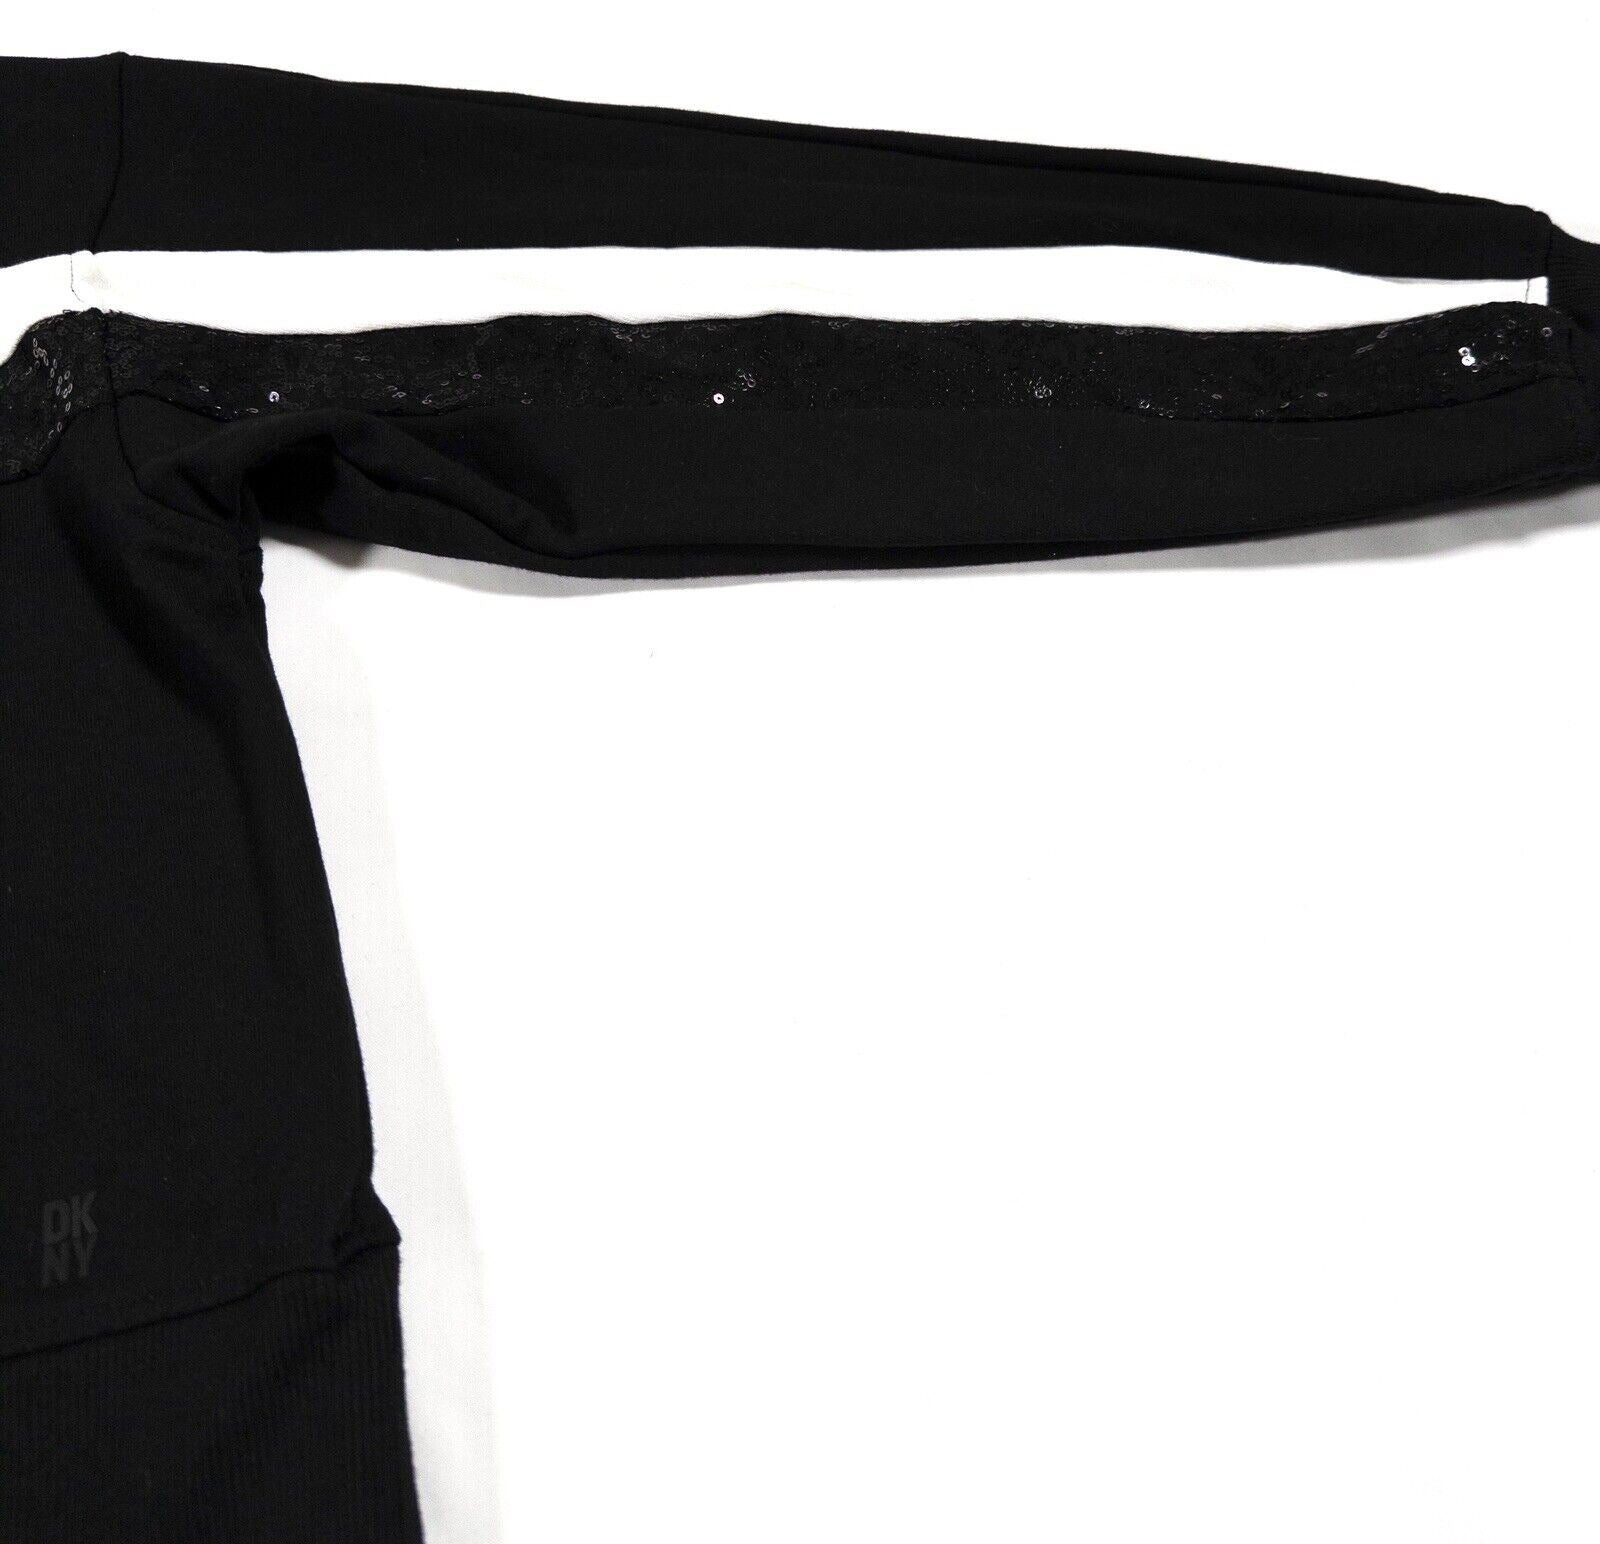 DKNY Women's Sweatshirt Jumper Size UK Large Black and White